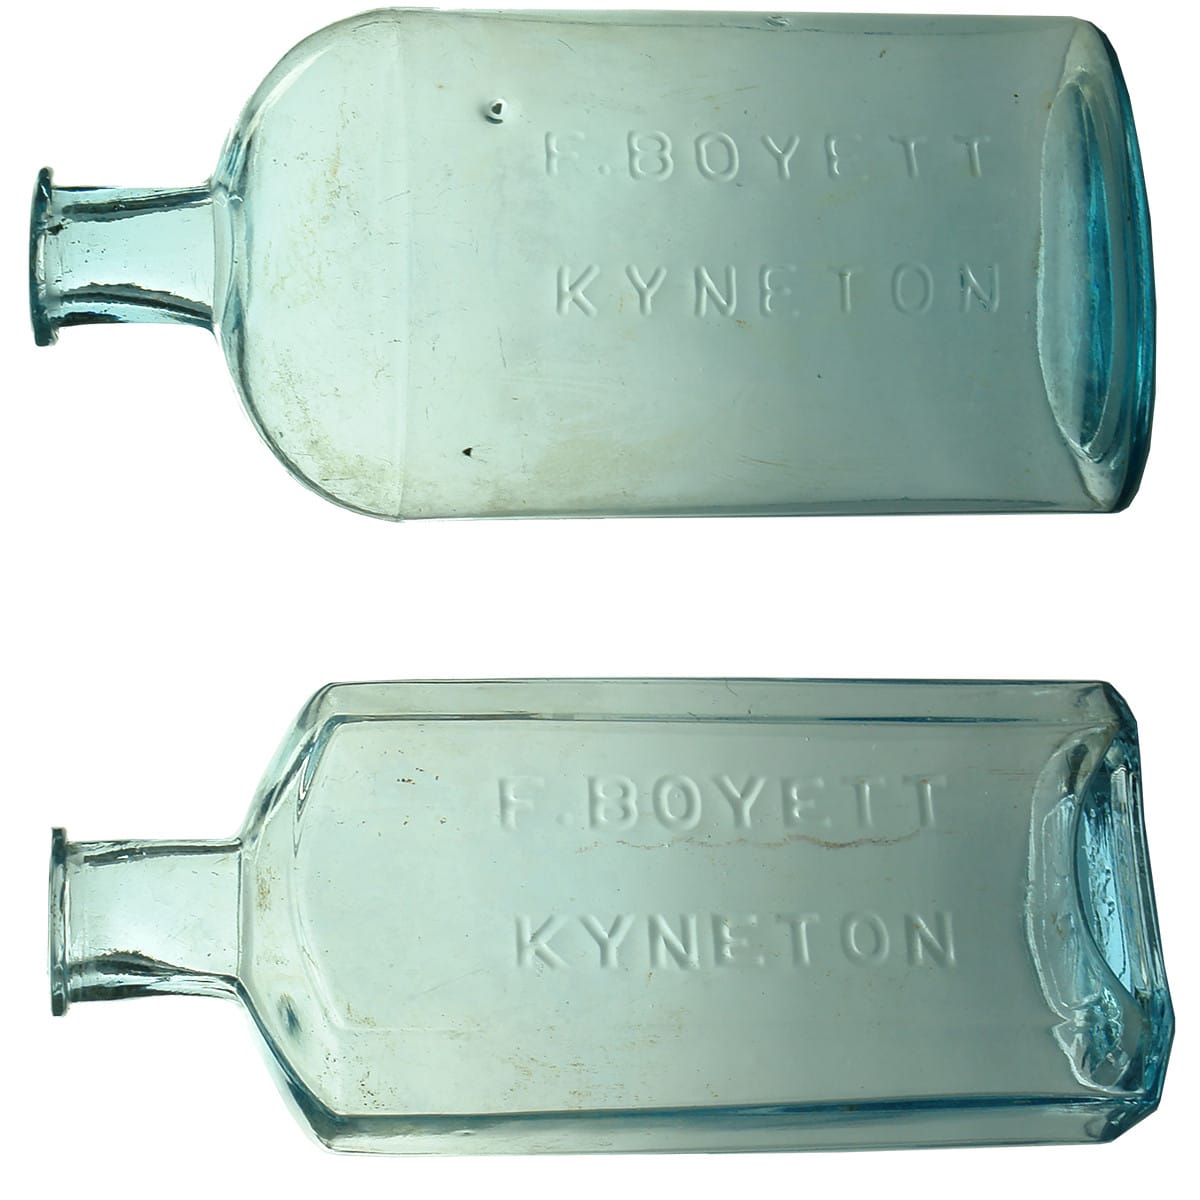 Pair of Chemist bottles from F. Boyett, Kyneton. Oval & Oblong. Ice Blue. (Victoria)